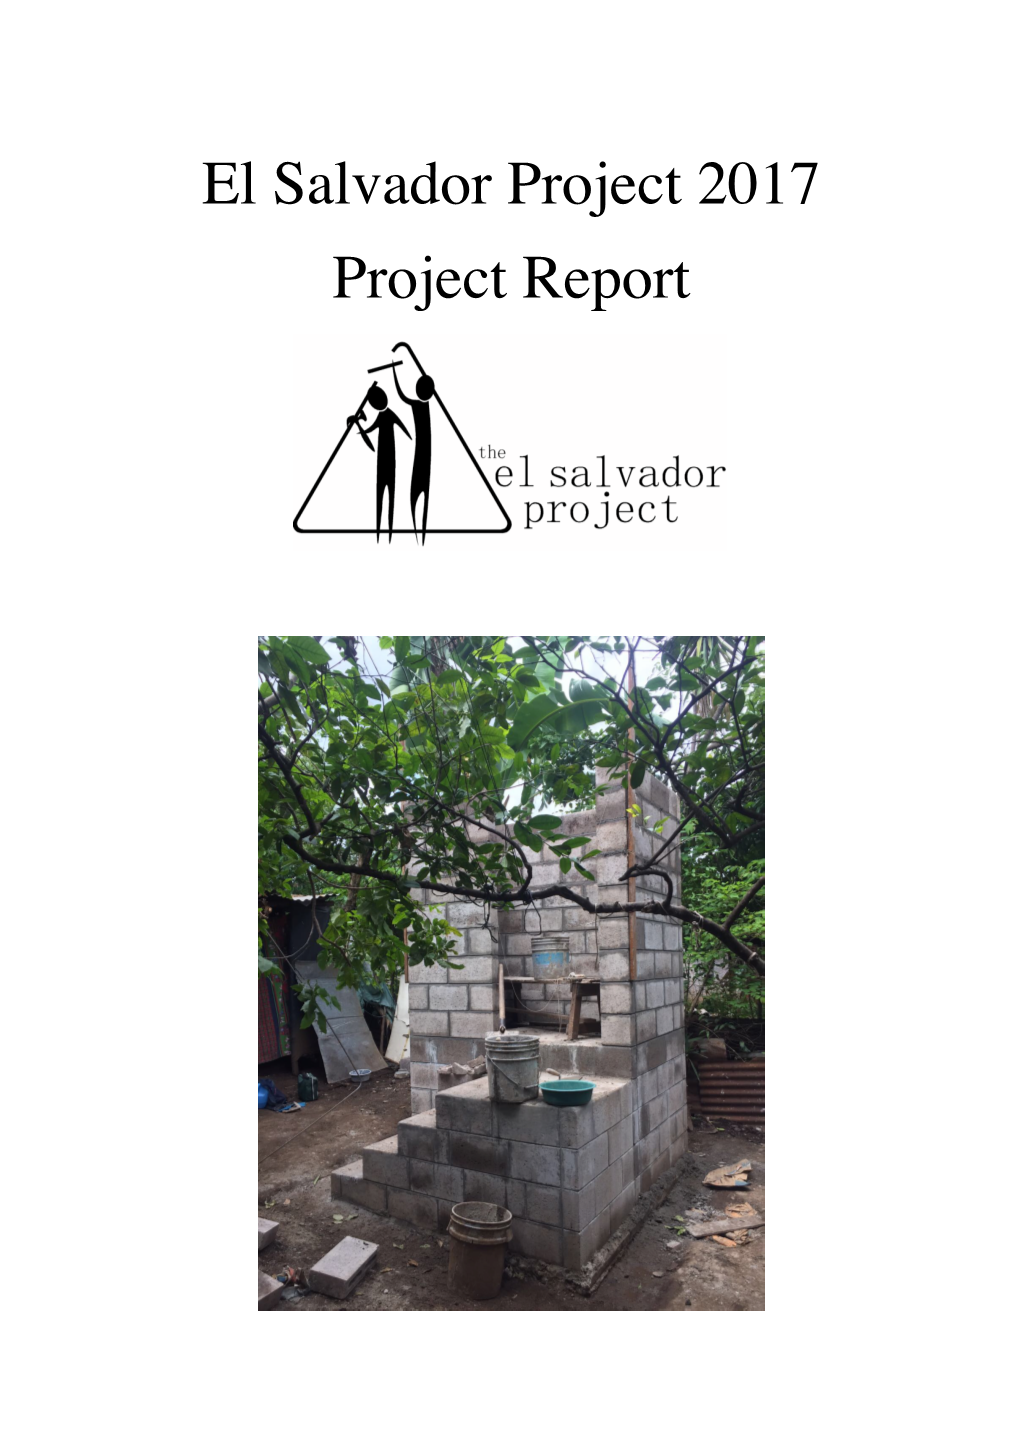 El Salvador Project 2017 Project Report